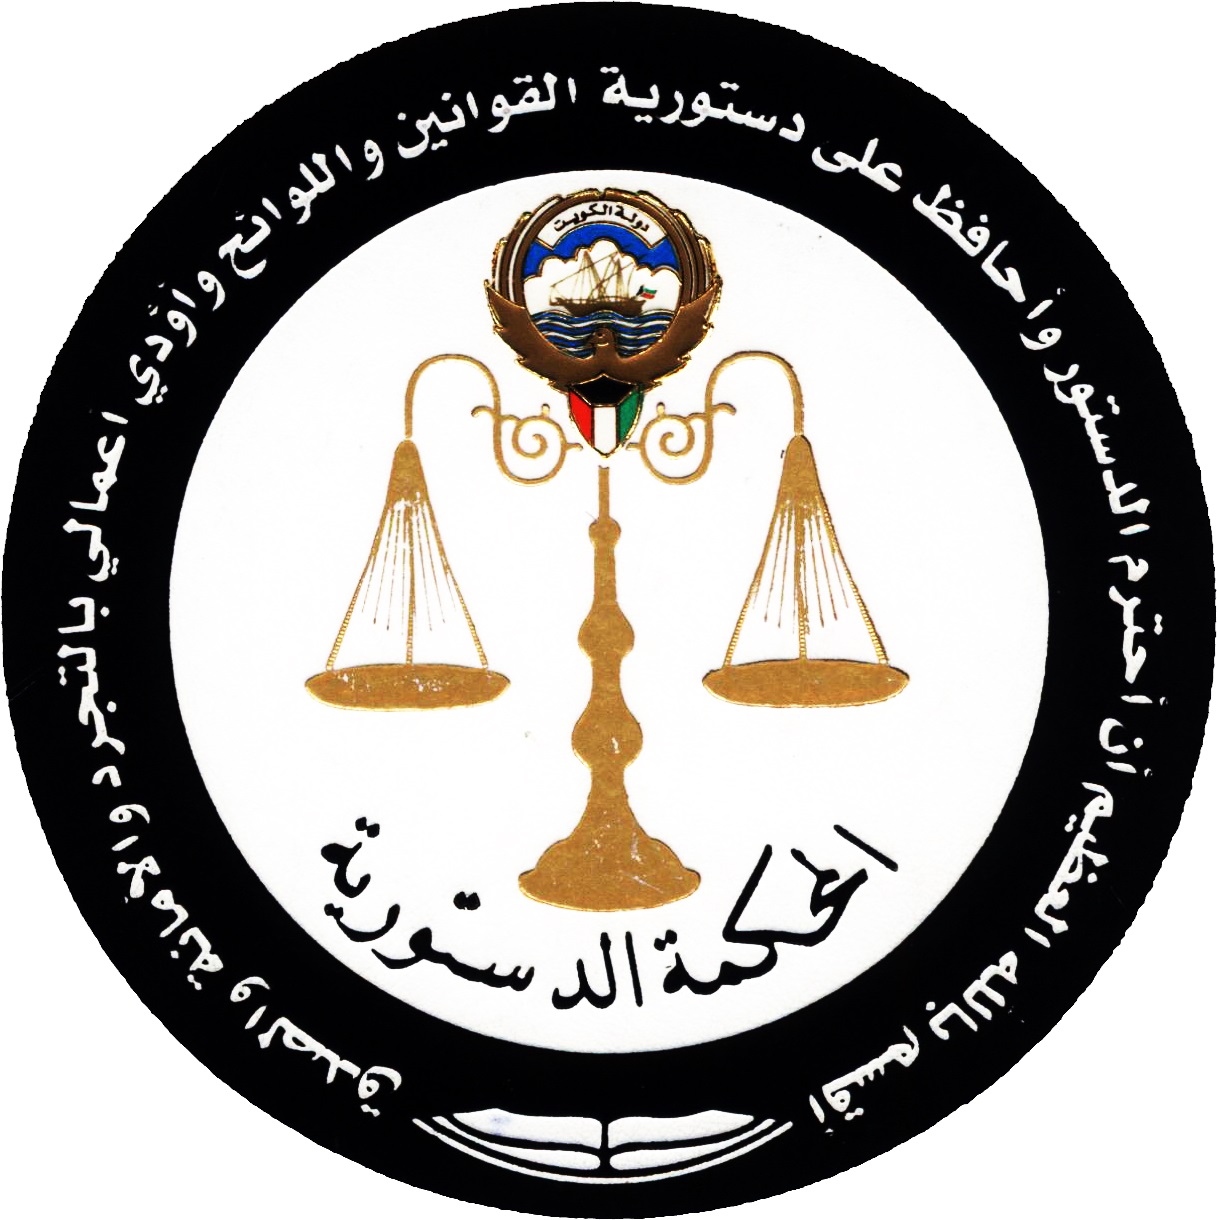 Kuwait's Constitutional Court